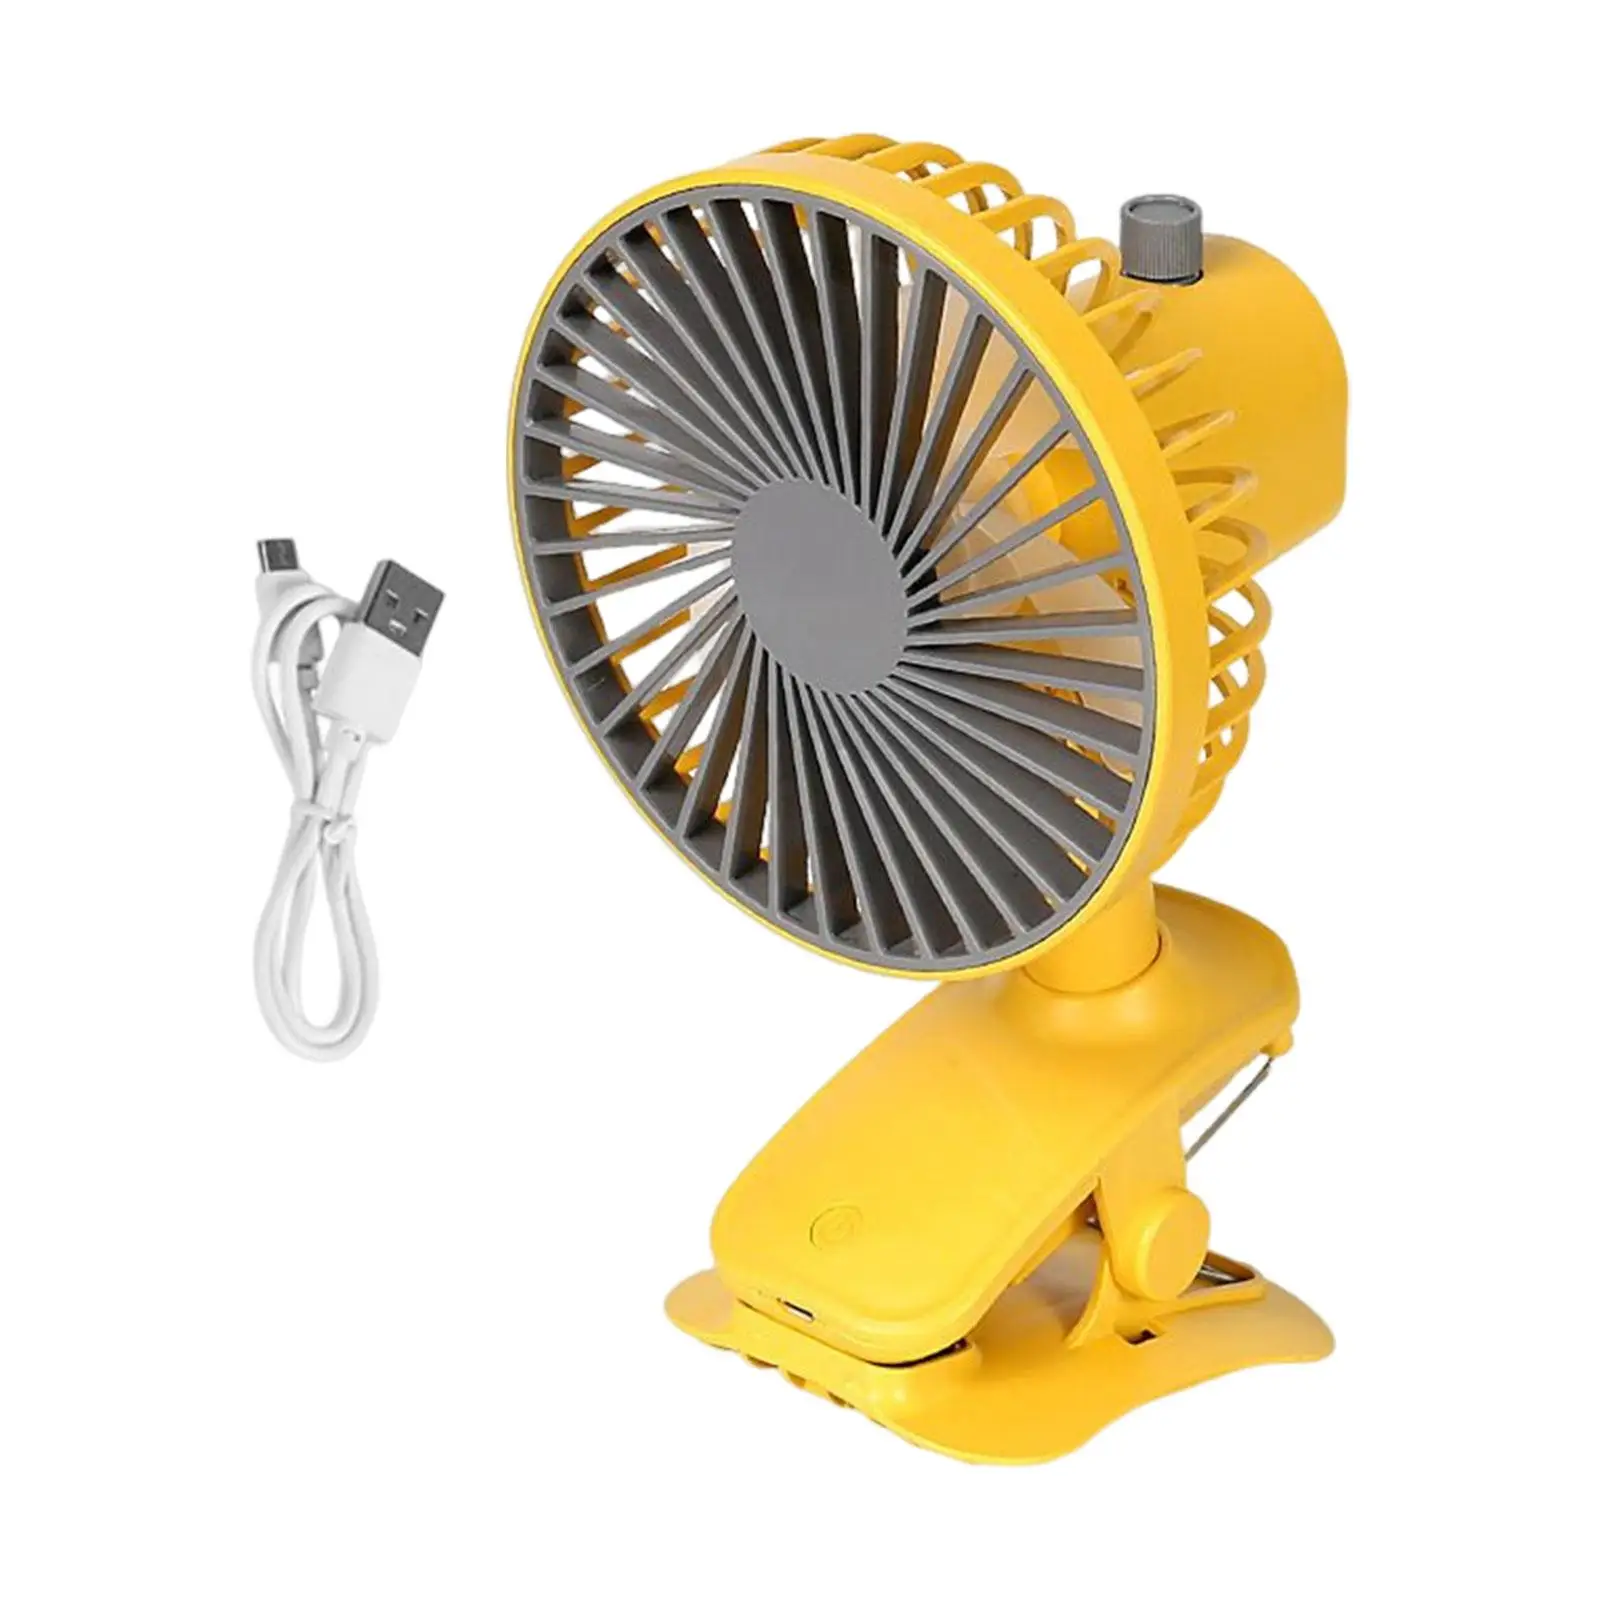 Clip On Fan Rechargeable 3 Speeds Quiet 90° Auto Oscillating Fan USB Desk Fan Personal Cooling Fan for Dorm Home Travel